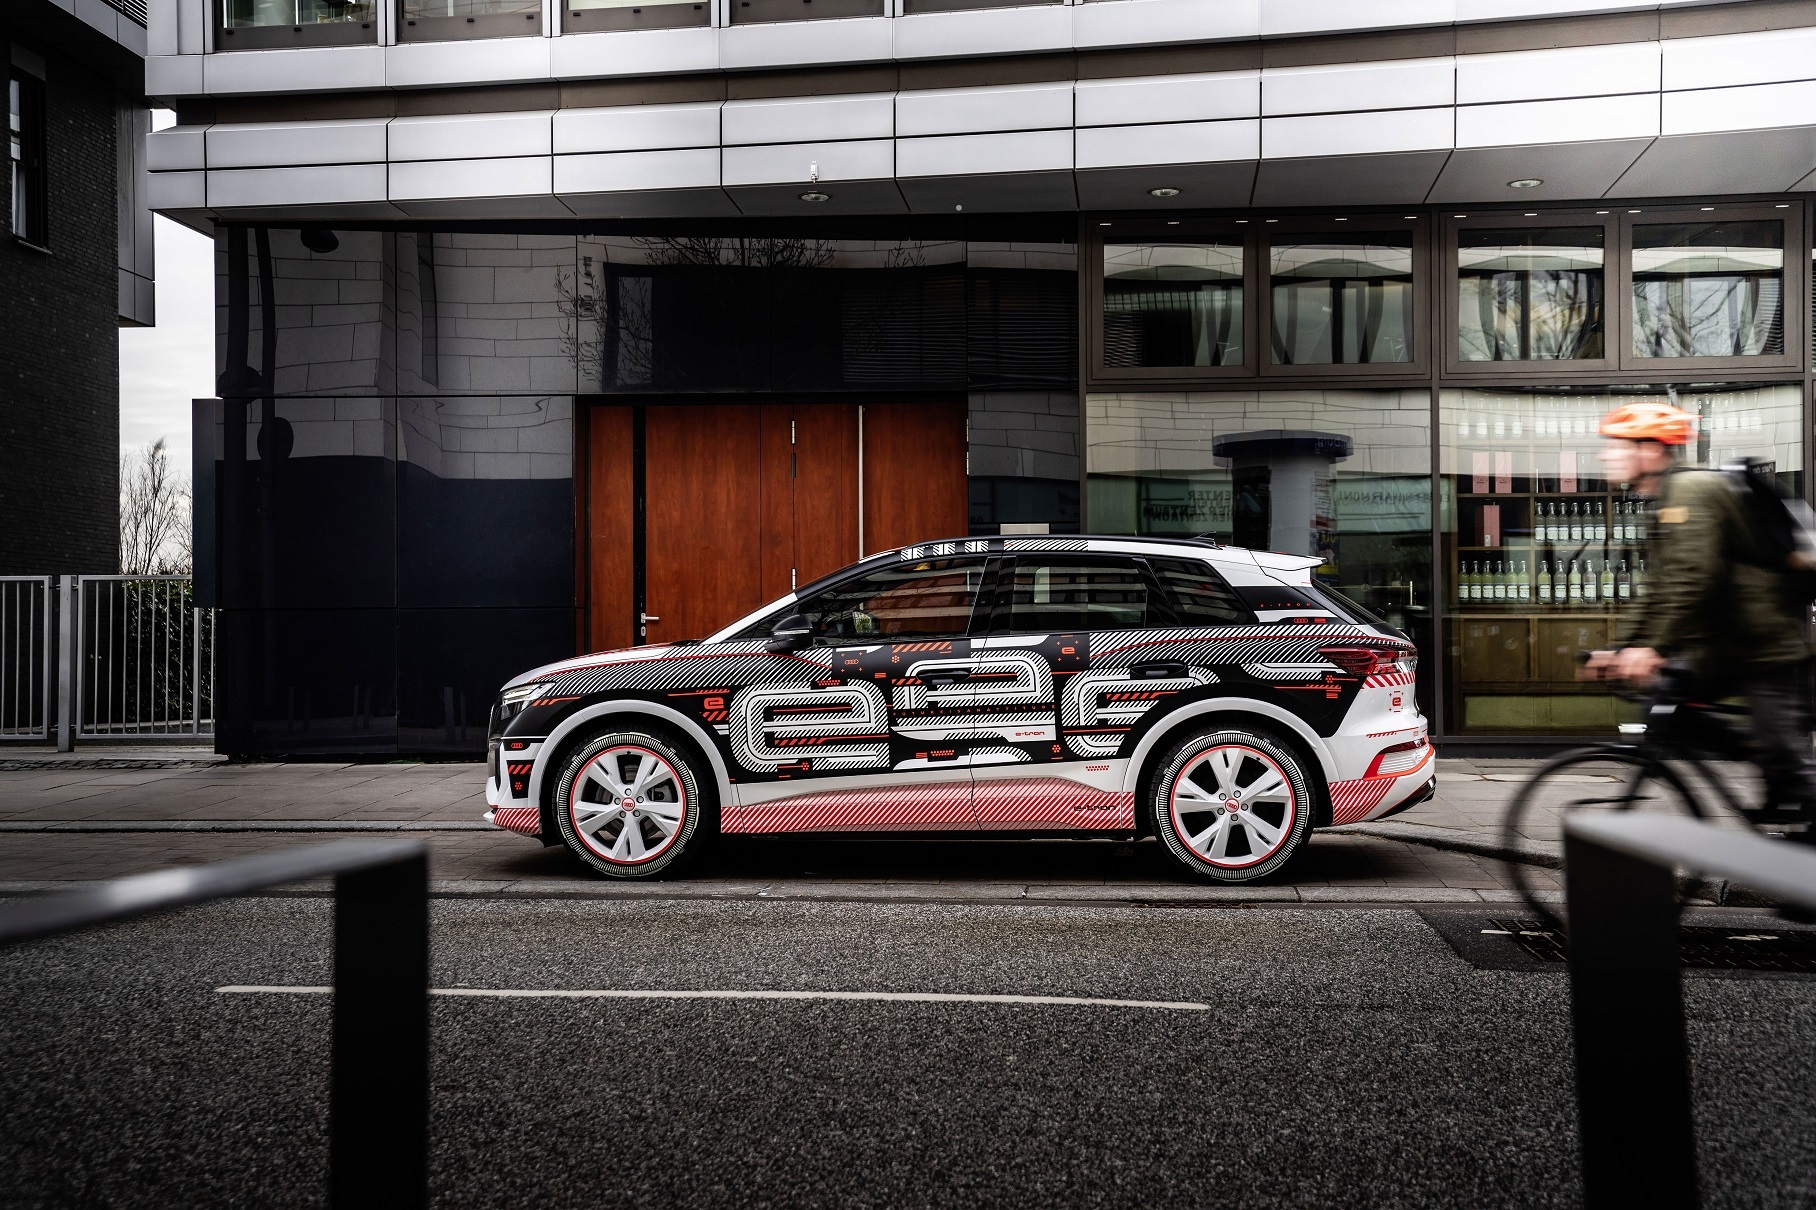 Дополненная реальность и голосовой помощник Audi: раскрыт салон Q4 e-tron